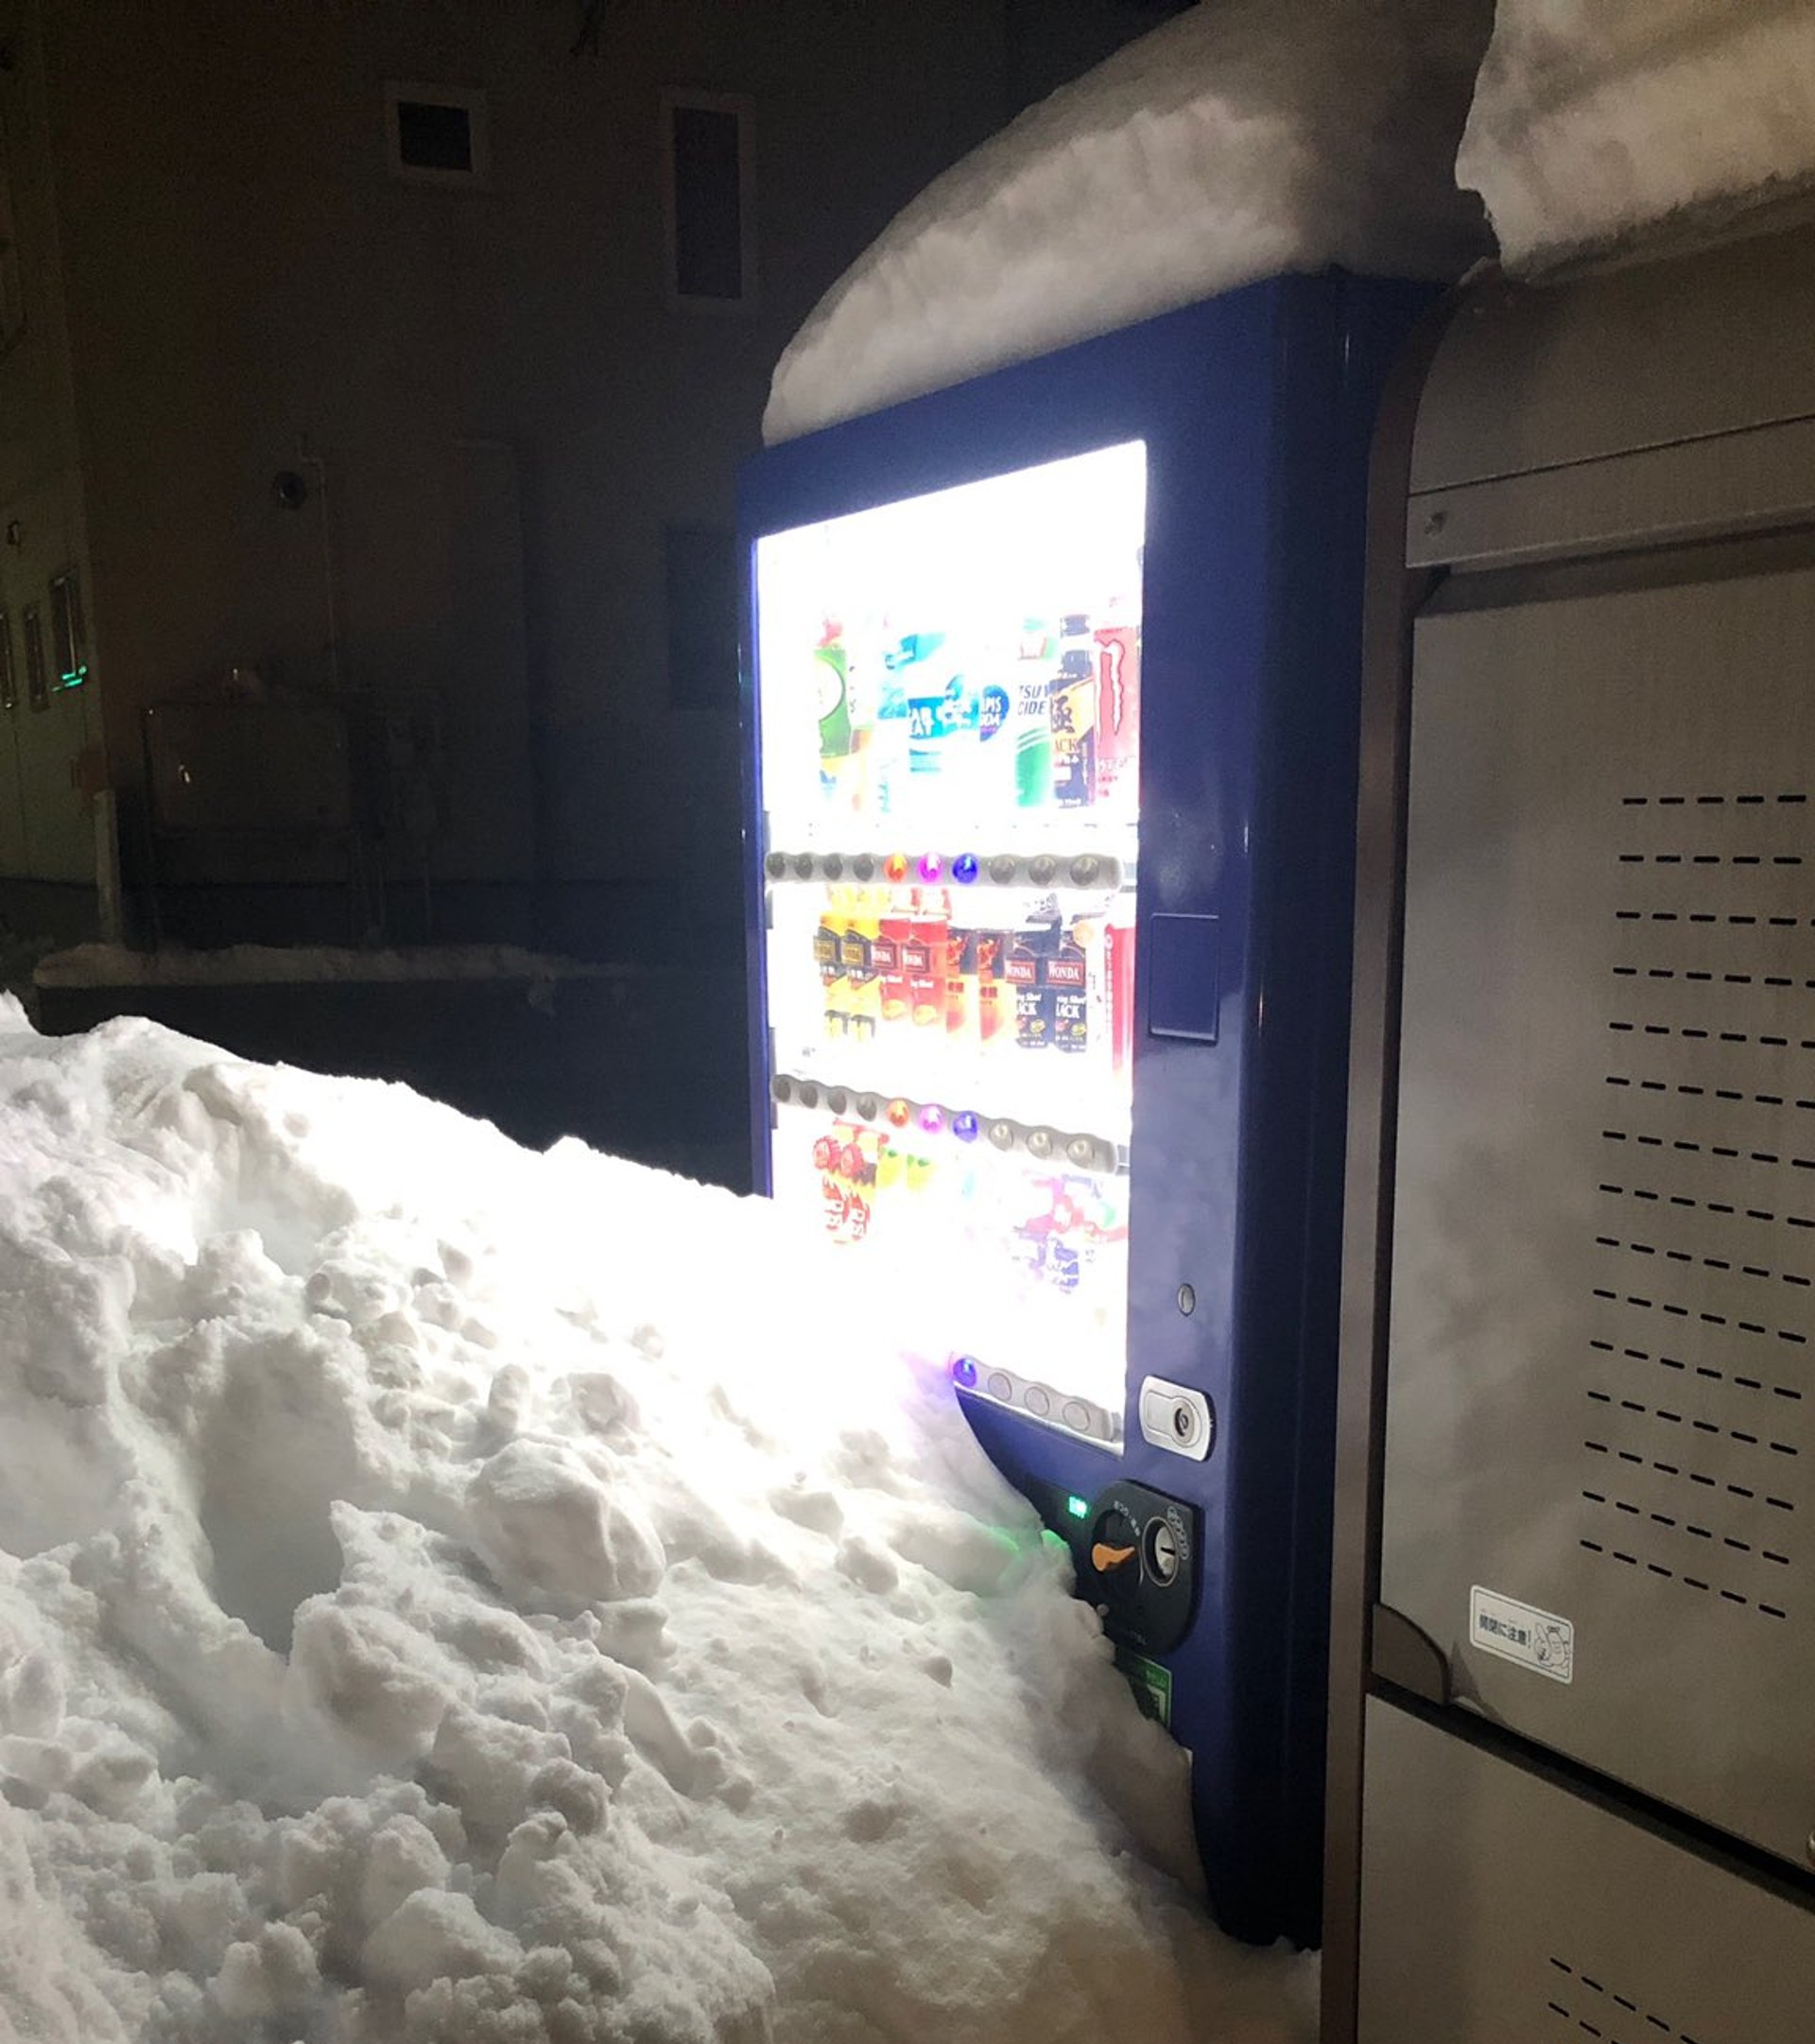 ผู้ใช้ทวิตเตอร์ชาวญี่ปุ่นโพสต์ทวีตการซื้อเครื่องดื่มในช่วงหิมะตกต่อเนื่องนับเดือนจนกลายเป็นมหากาพย์